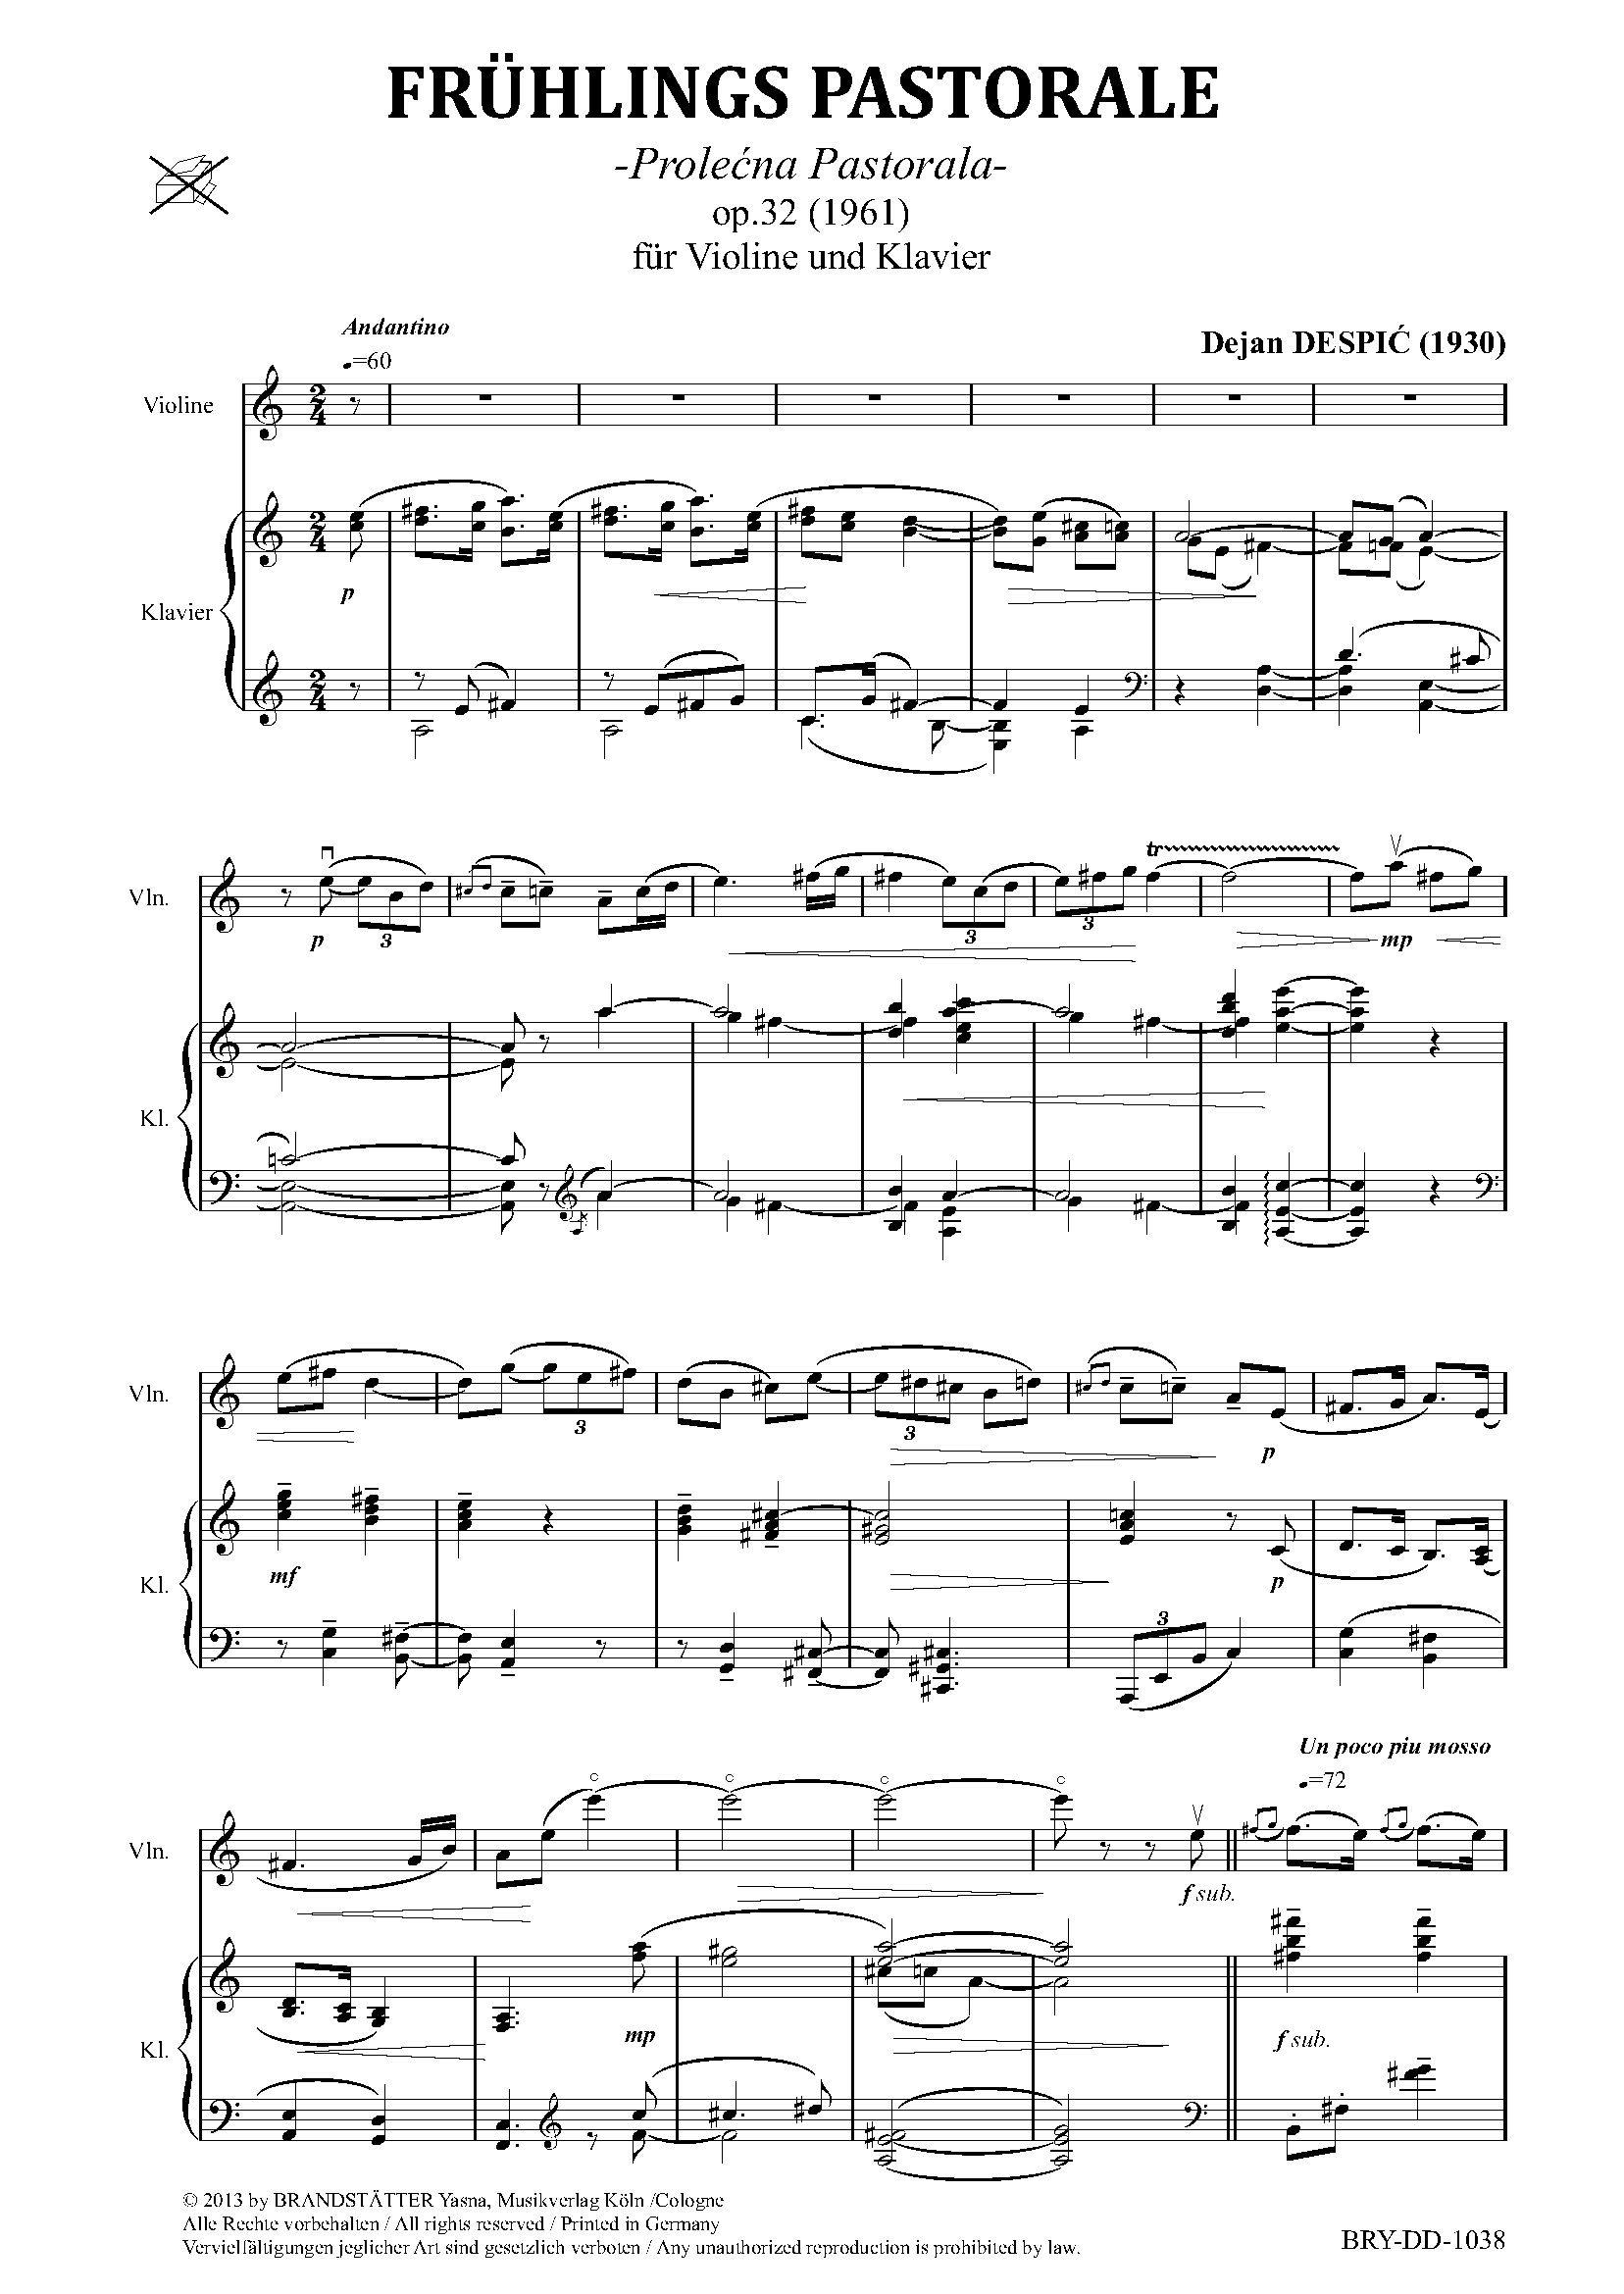 FRÜHLINGS PASTORALE op.32